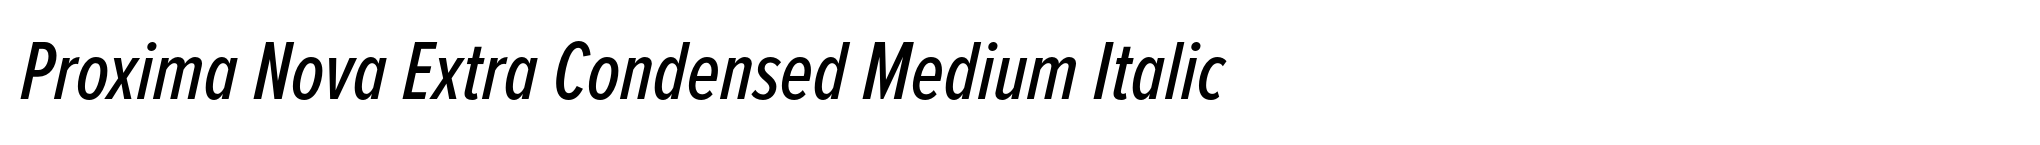 Proxima Nova Extra Condensed Medium Italic image